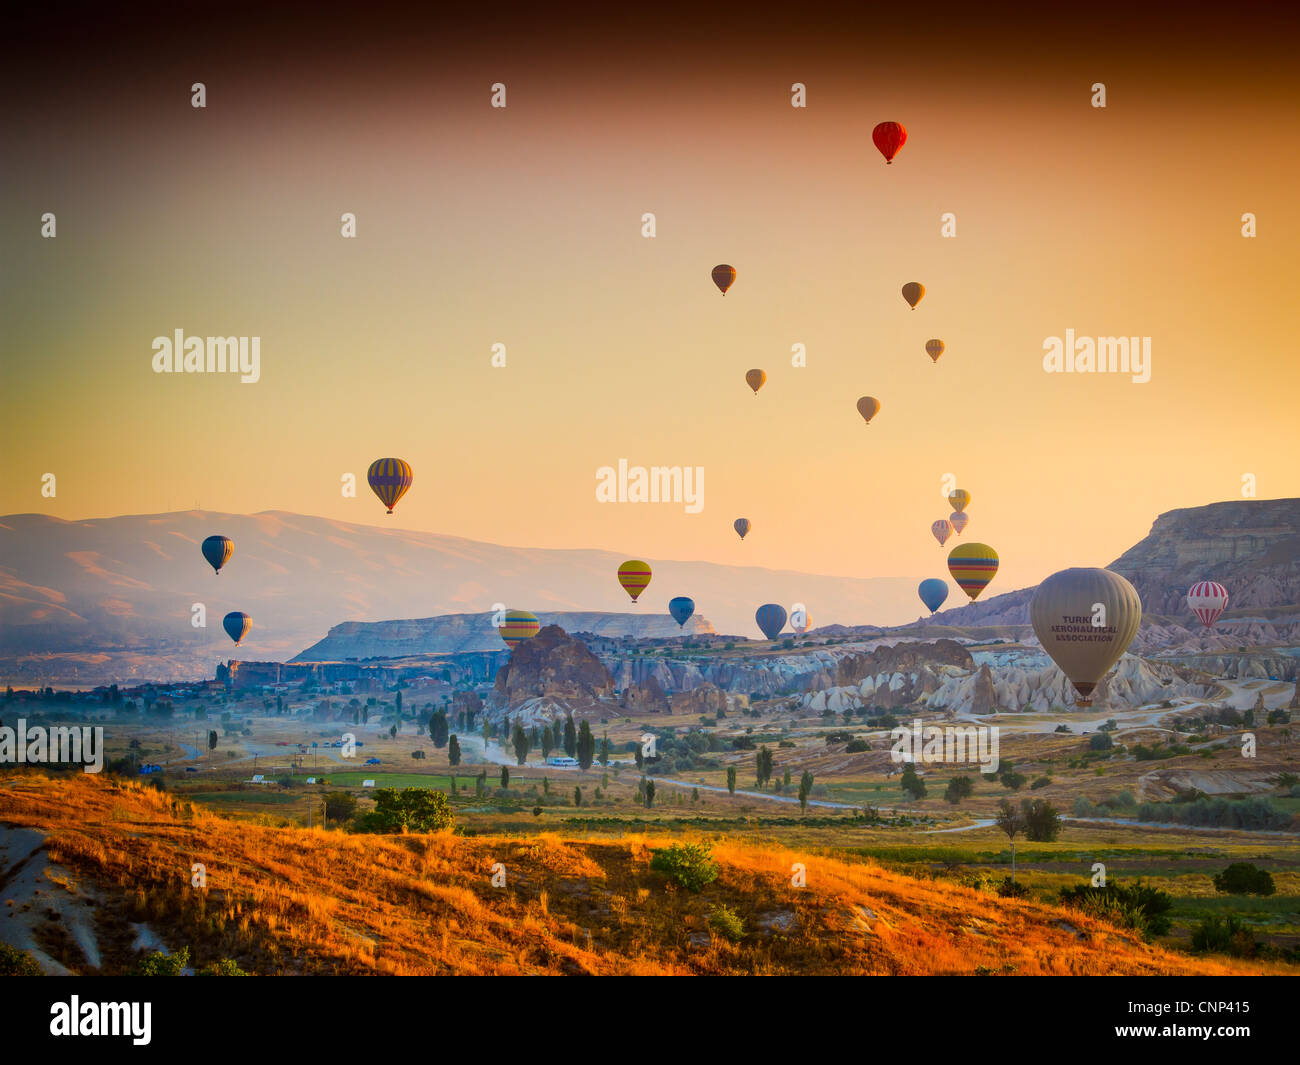 Hot-air ballon. Cappadocia, Turkey. Stock Photo